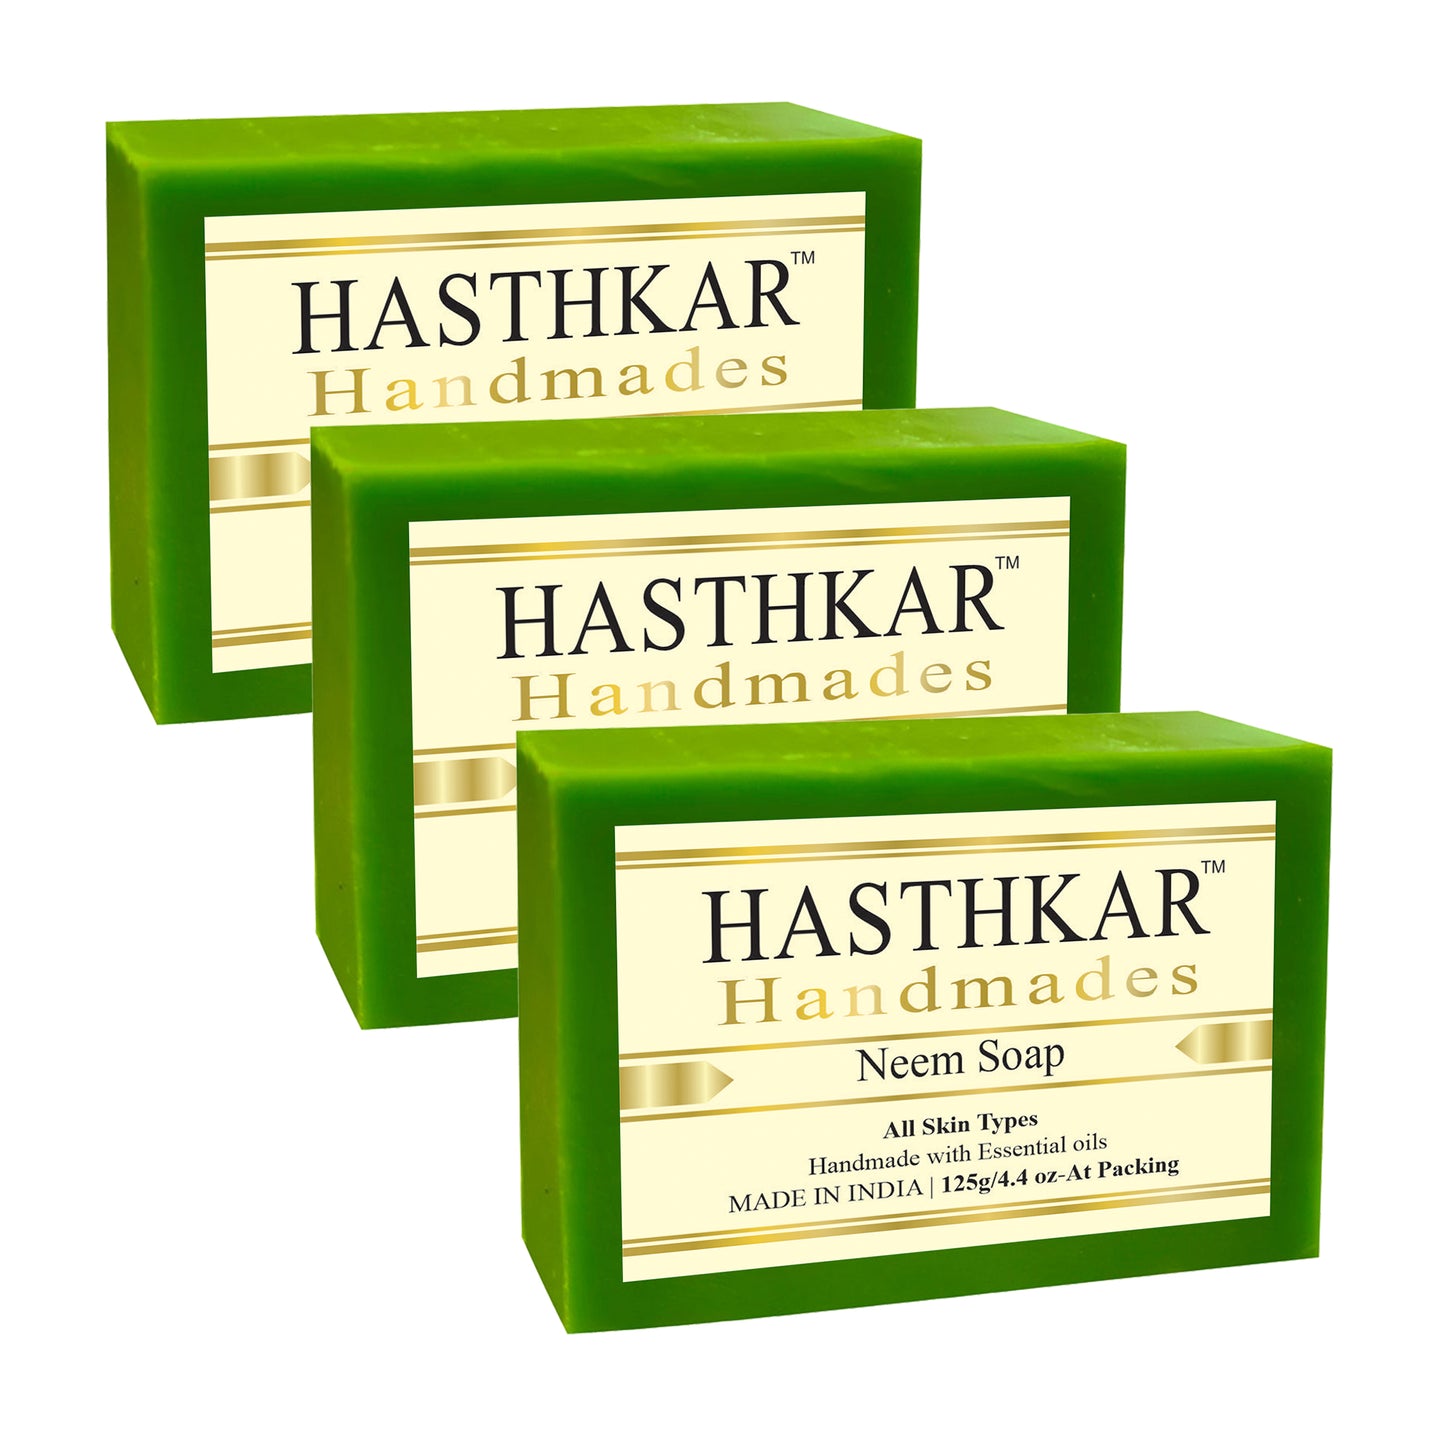 Hasthkar handmades neem bathing soap men women pack of 3